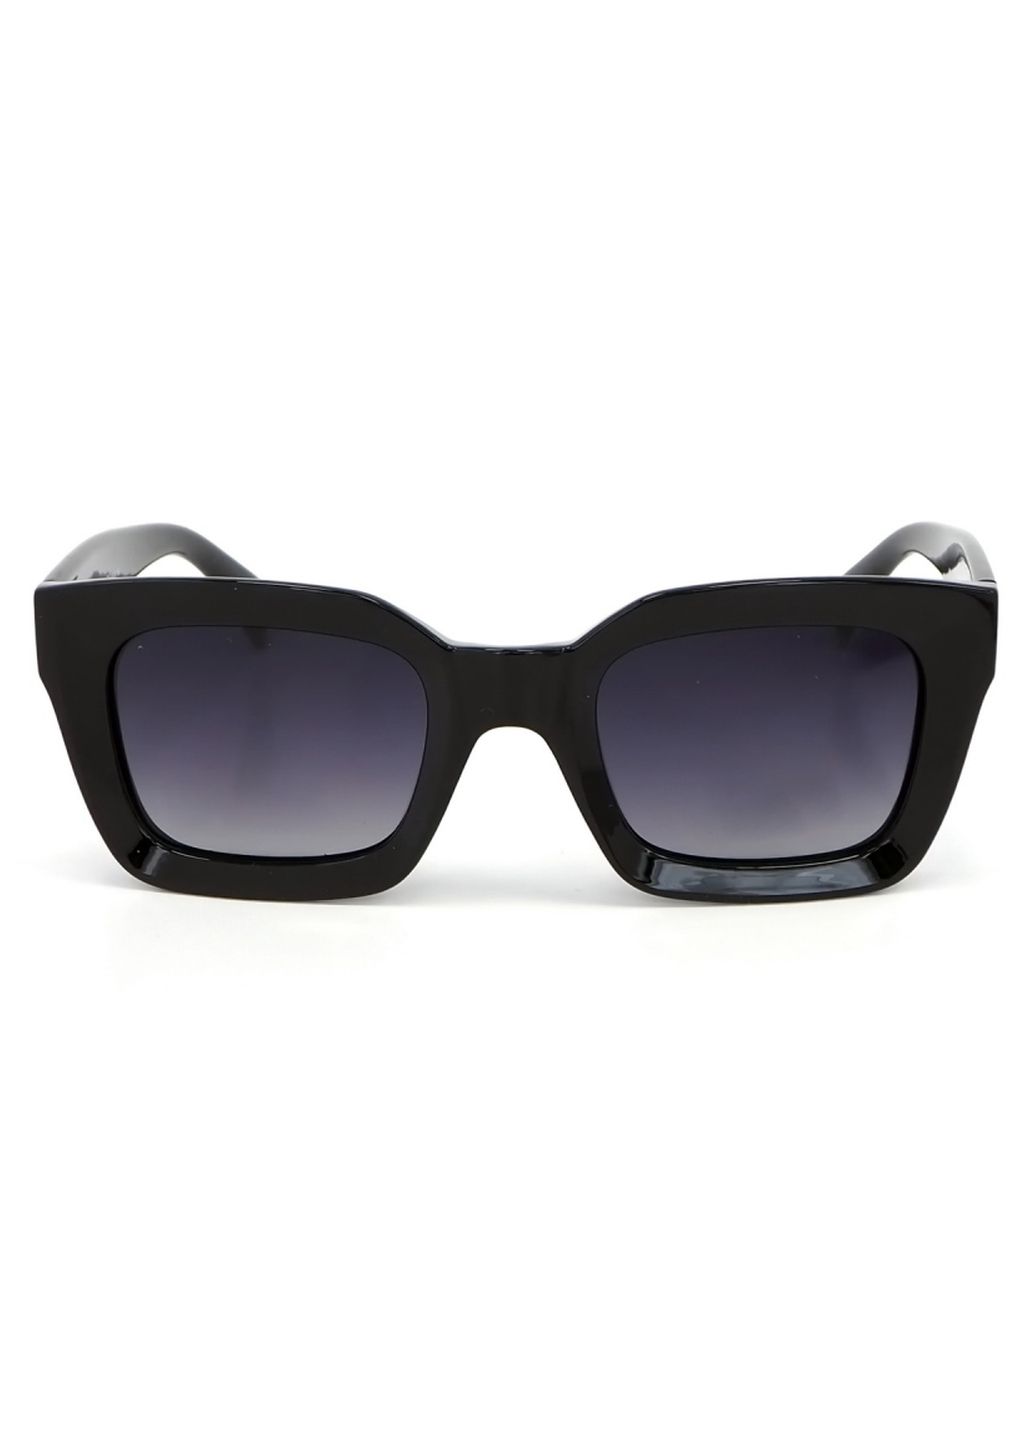 Купить Женские солнцезащитные очки Katrin Jones с поляризацией KJ0860 180043 - Черный в интернет-магазине